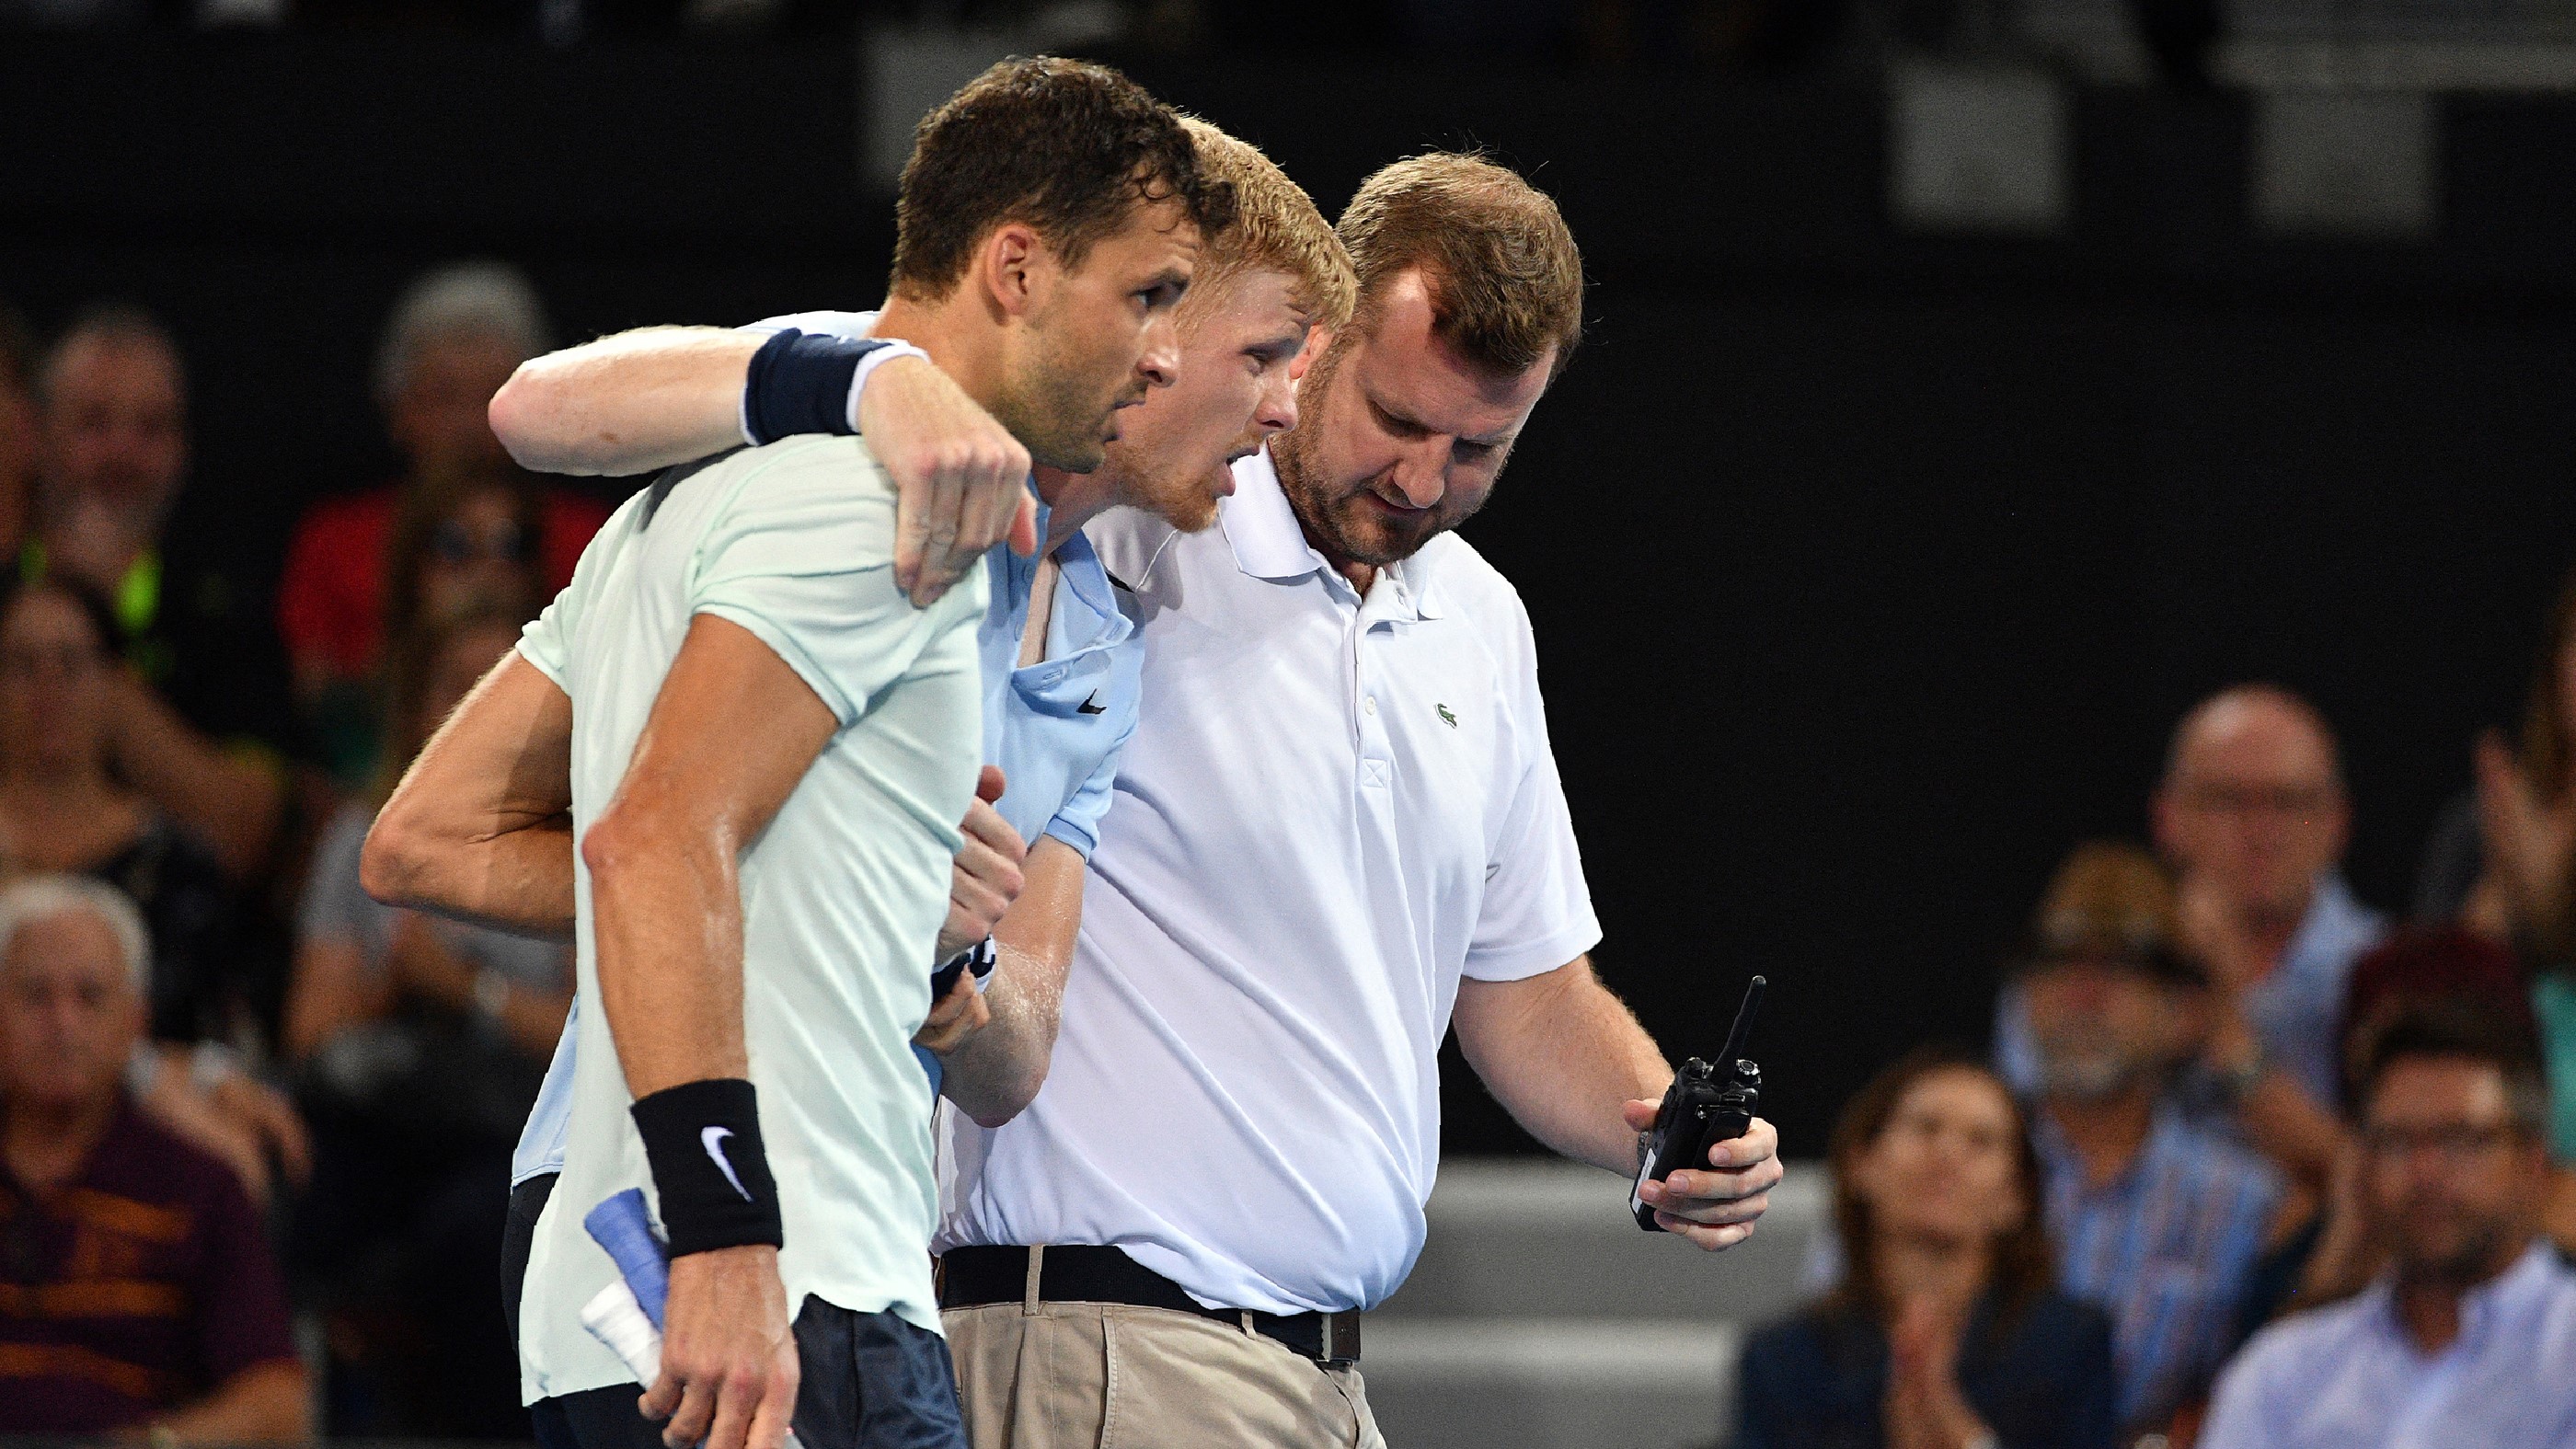 Grigor Dimitrov segít Kyle Edmundnak, miután megsérült a lába egy ausztrál teniszversenyen.